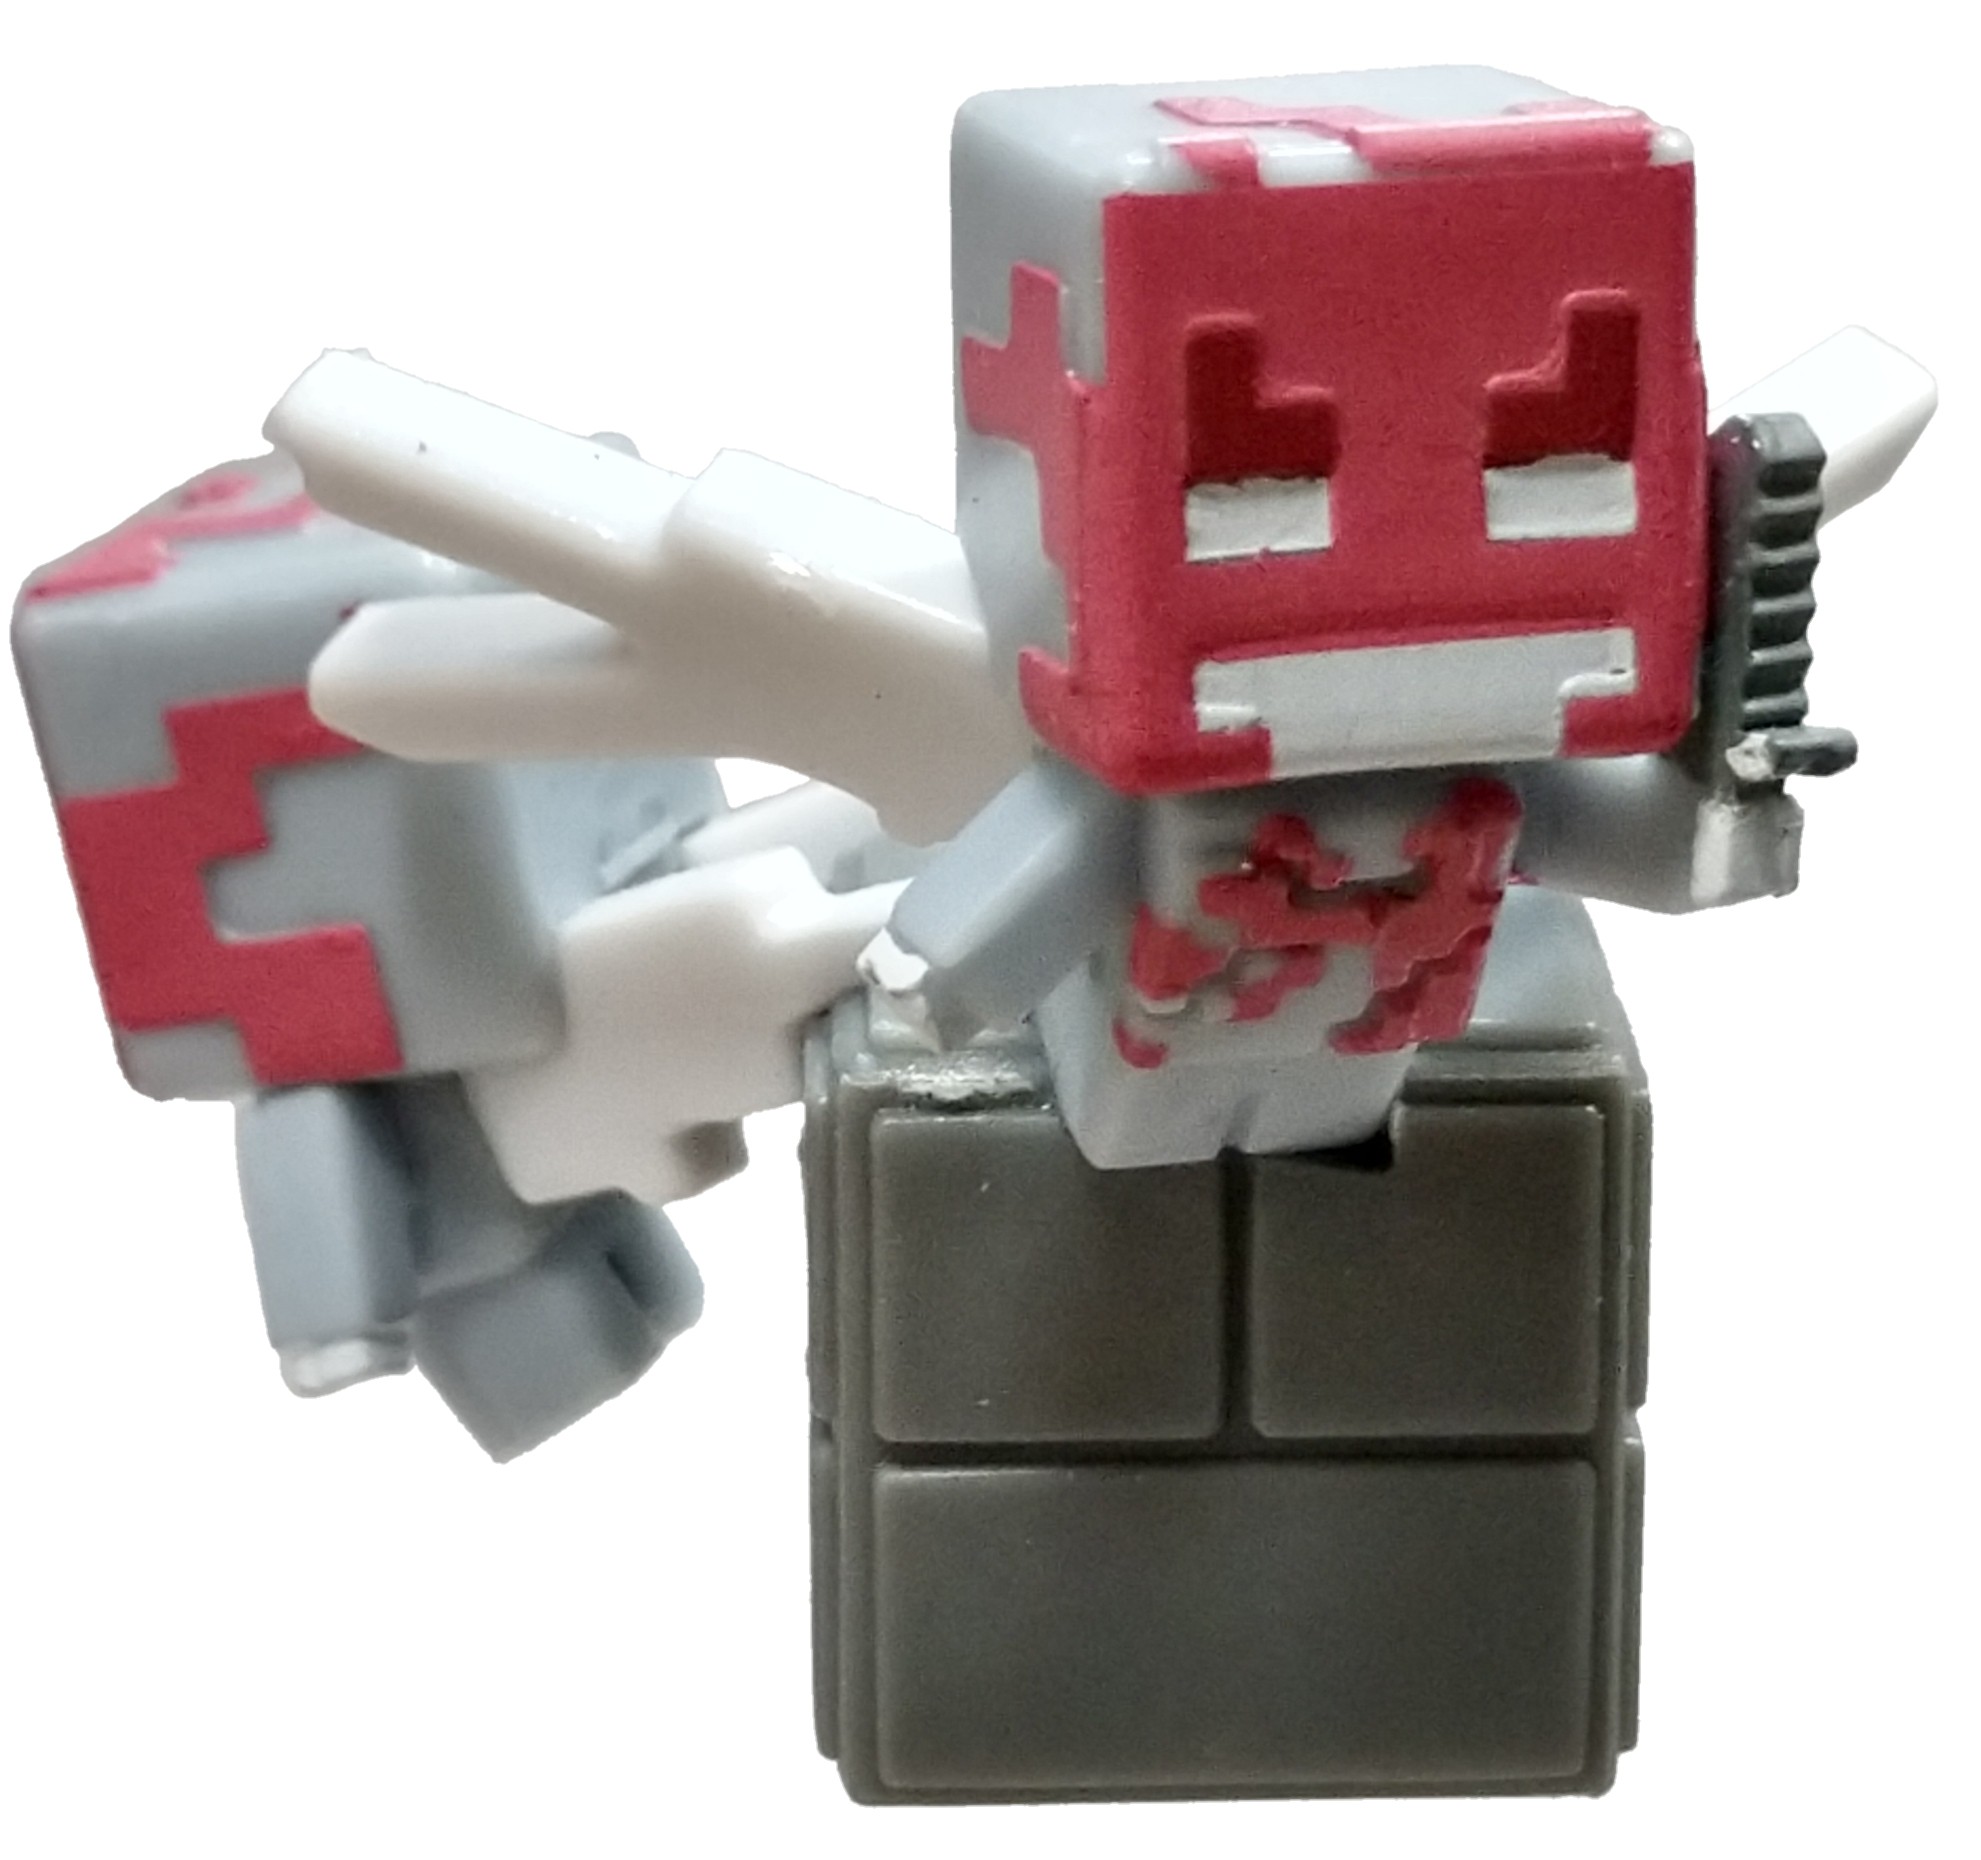 Mattel Minecraft Village Pillage Series 21 Vex Minifigure Ebay